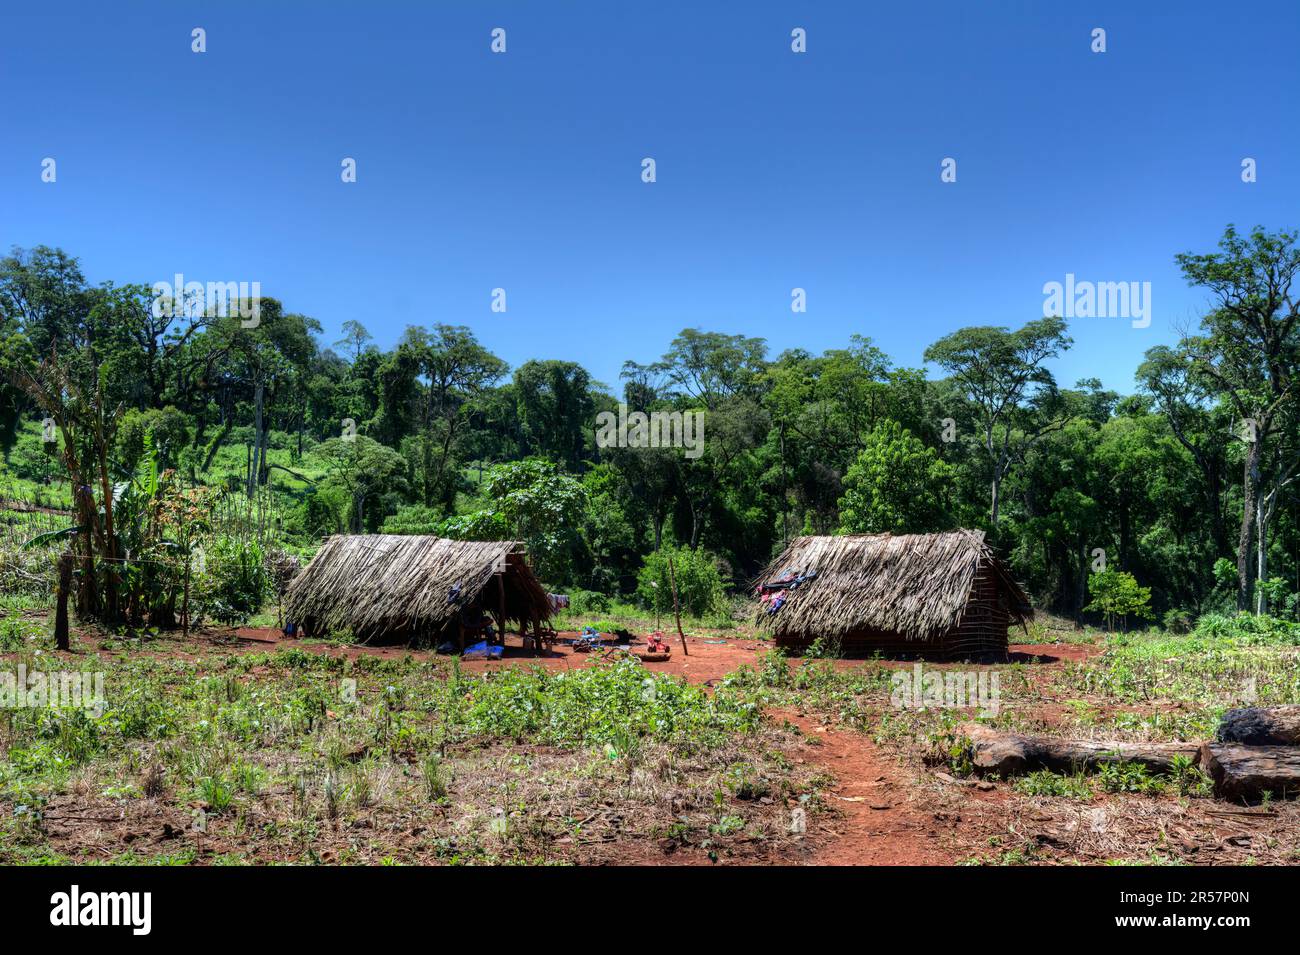 Comunidad aborigen jejy miri in Misiones, Argentina Stock Photo